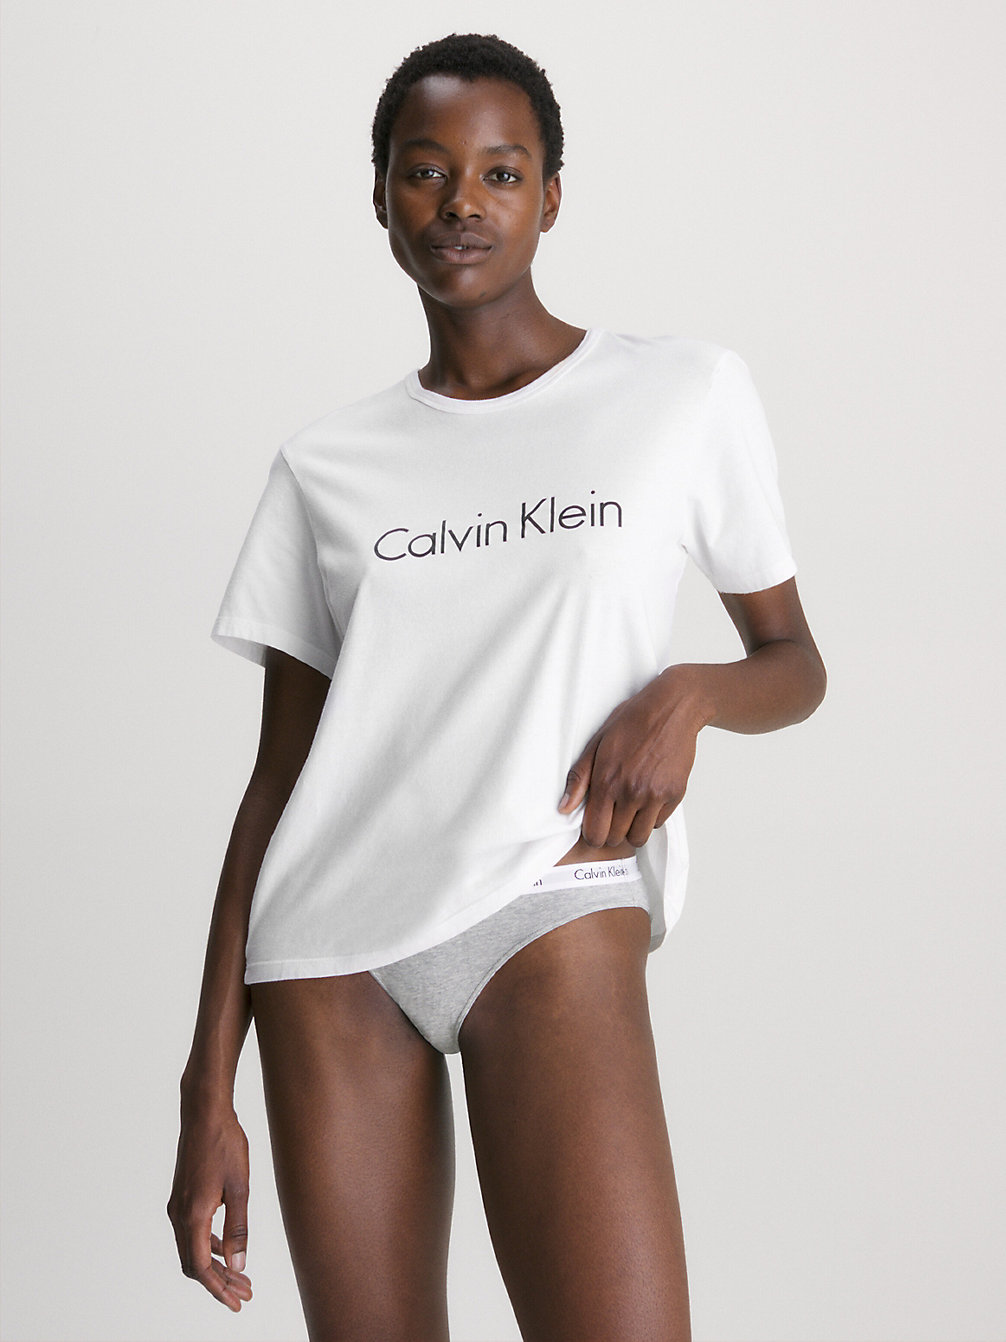 WHITE Pyjama Top - Comfort Cotton undefined women Calvin Klein